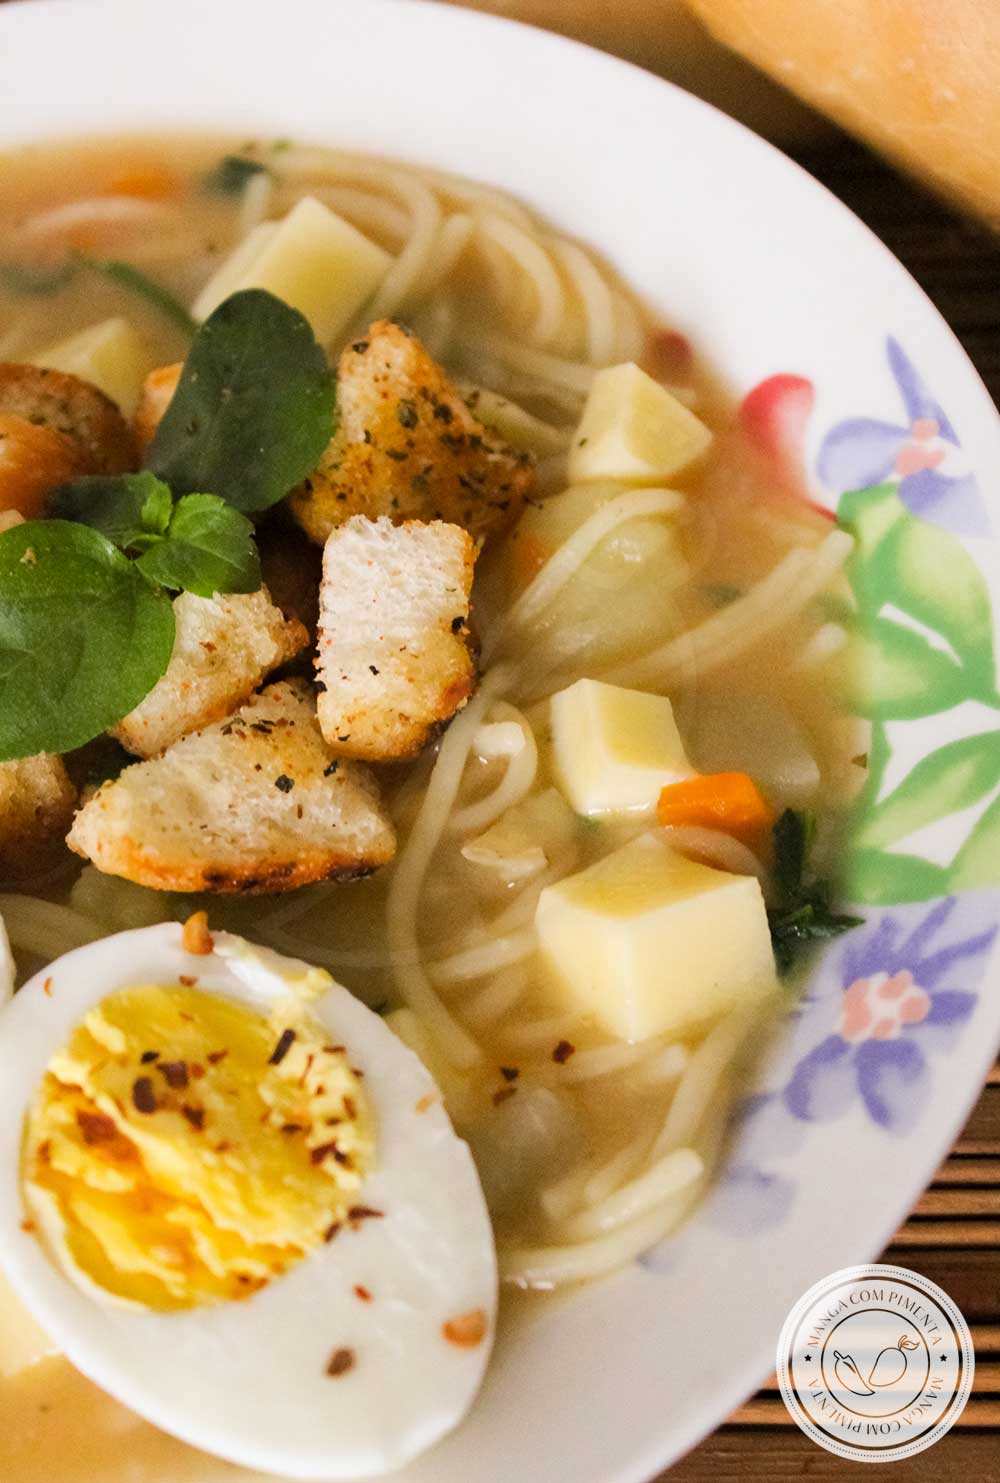 Receita Sopa de Legumes com Batata, Cenoura e Chuchu - prato quentinho que conforta o corpo e o coração.